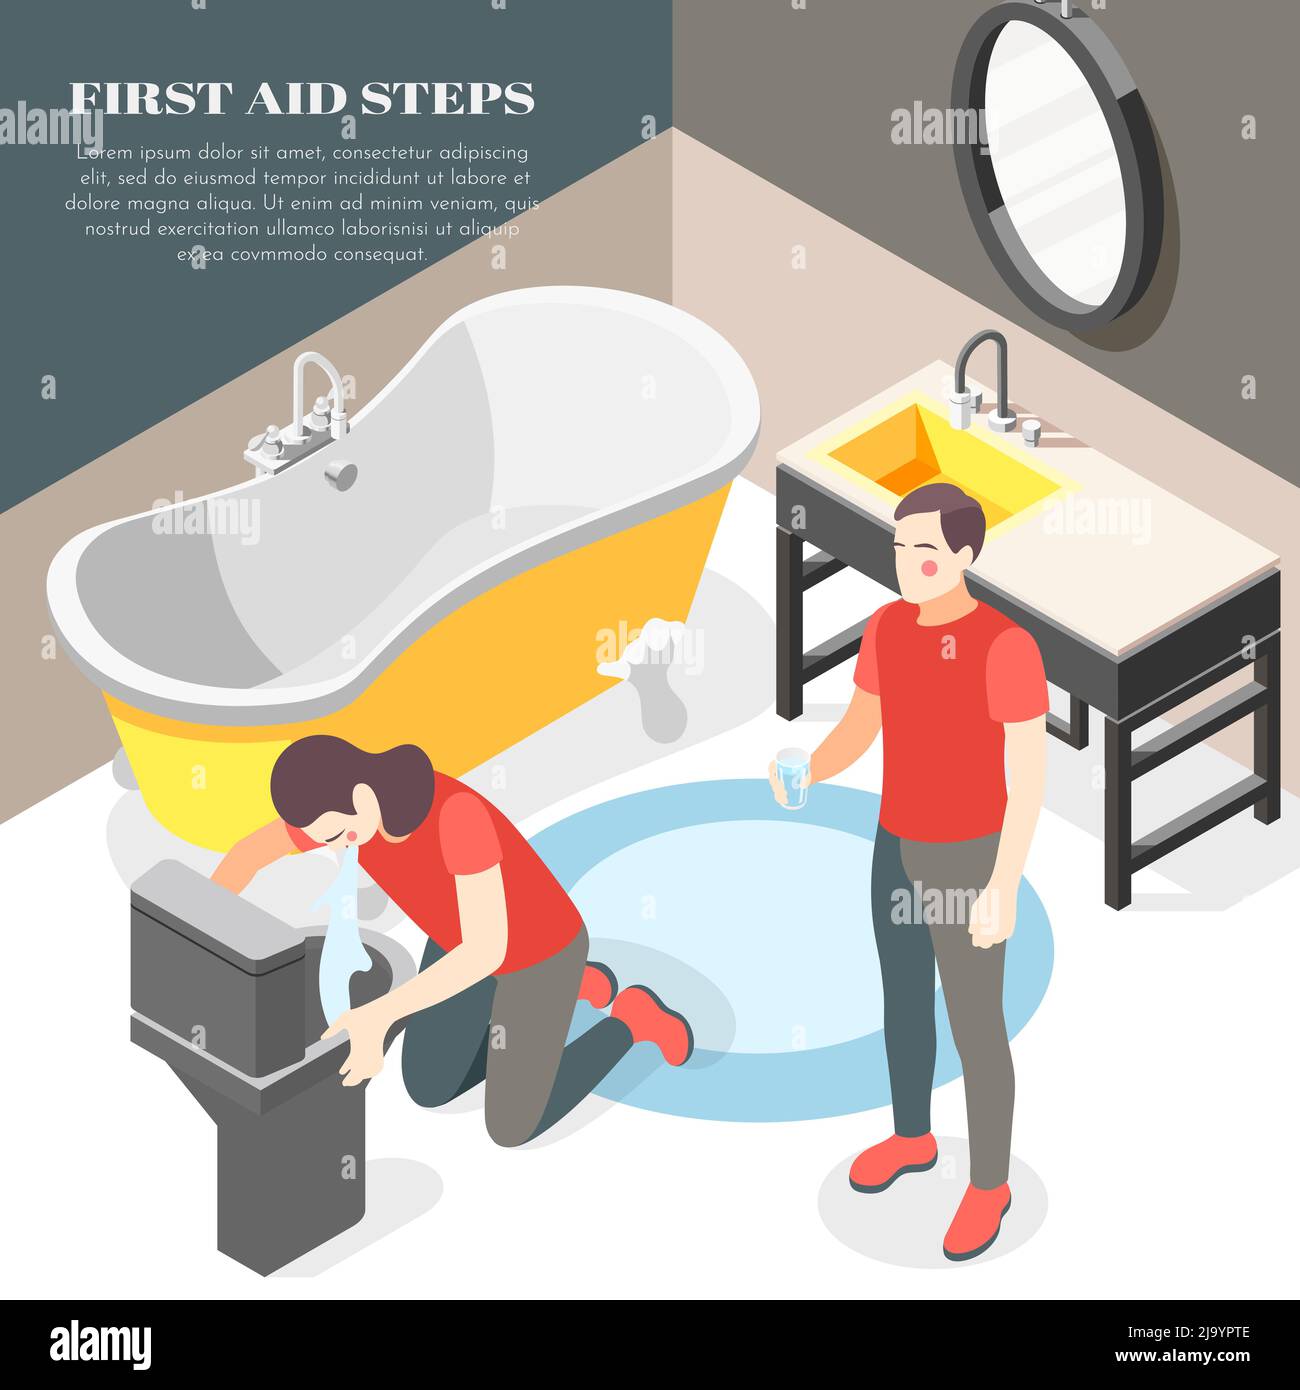 Firsts Hilfe Schritte für Lebensmittelvergiftung Durchfall Erbrechen isometrischen Badezimmer Hintergrund mit Glaswasser Vektor Illustration Stock Vektor